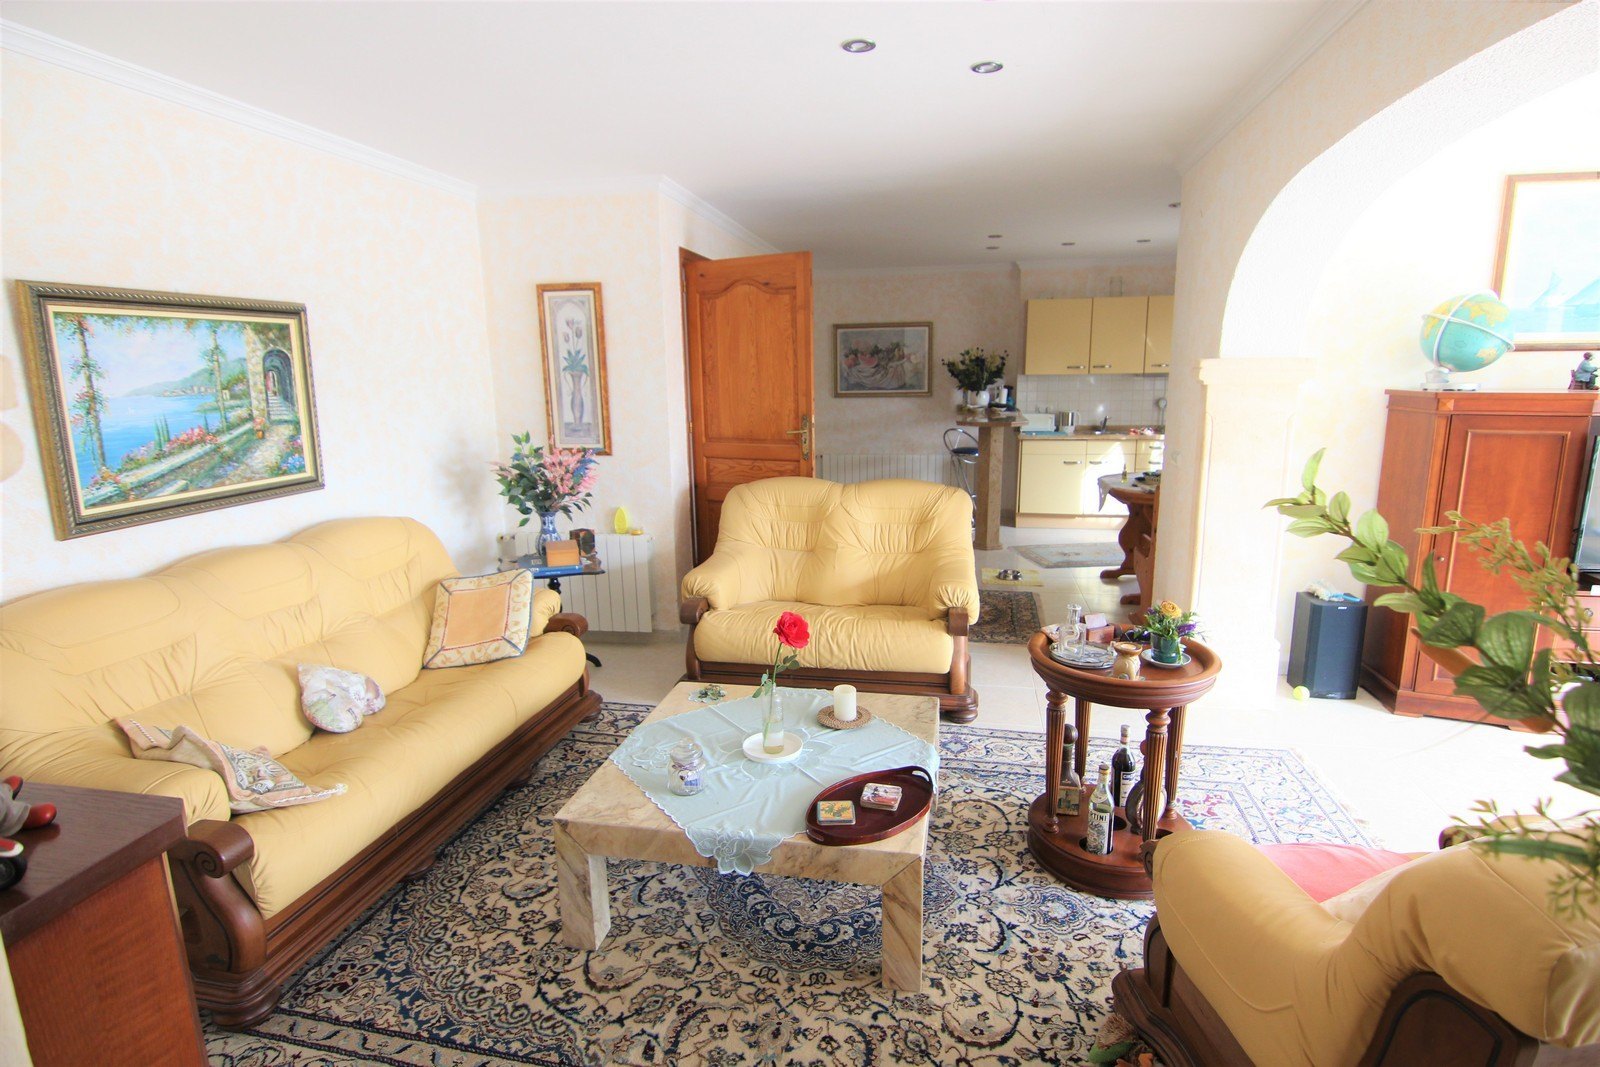 Villa a la venta con dos apartamentos y piscina en Moraira.